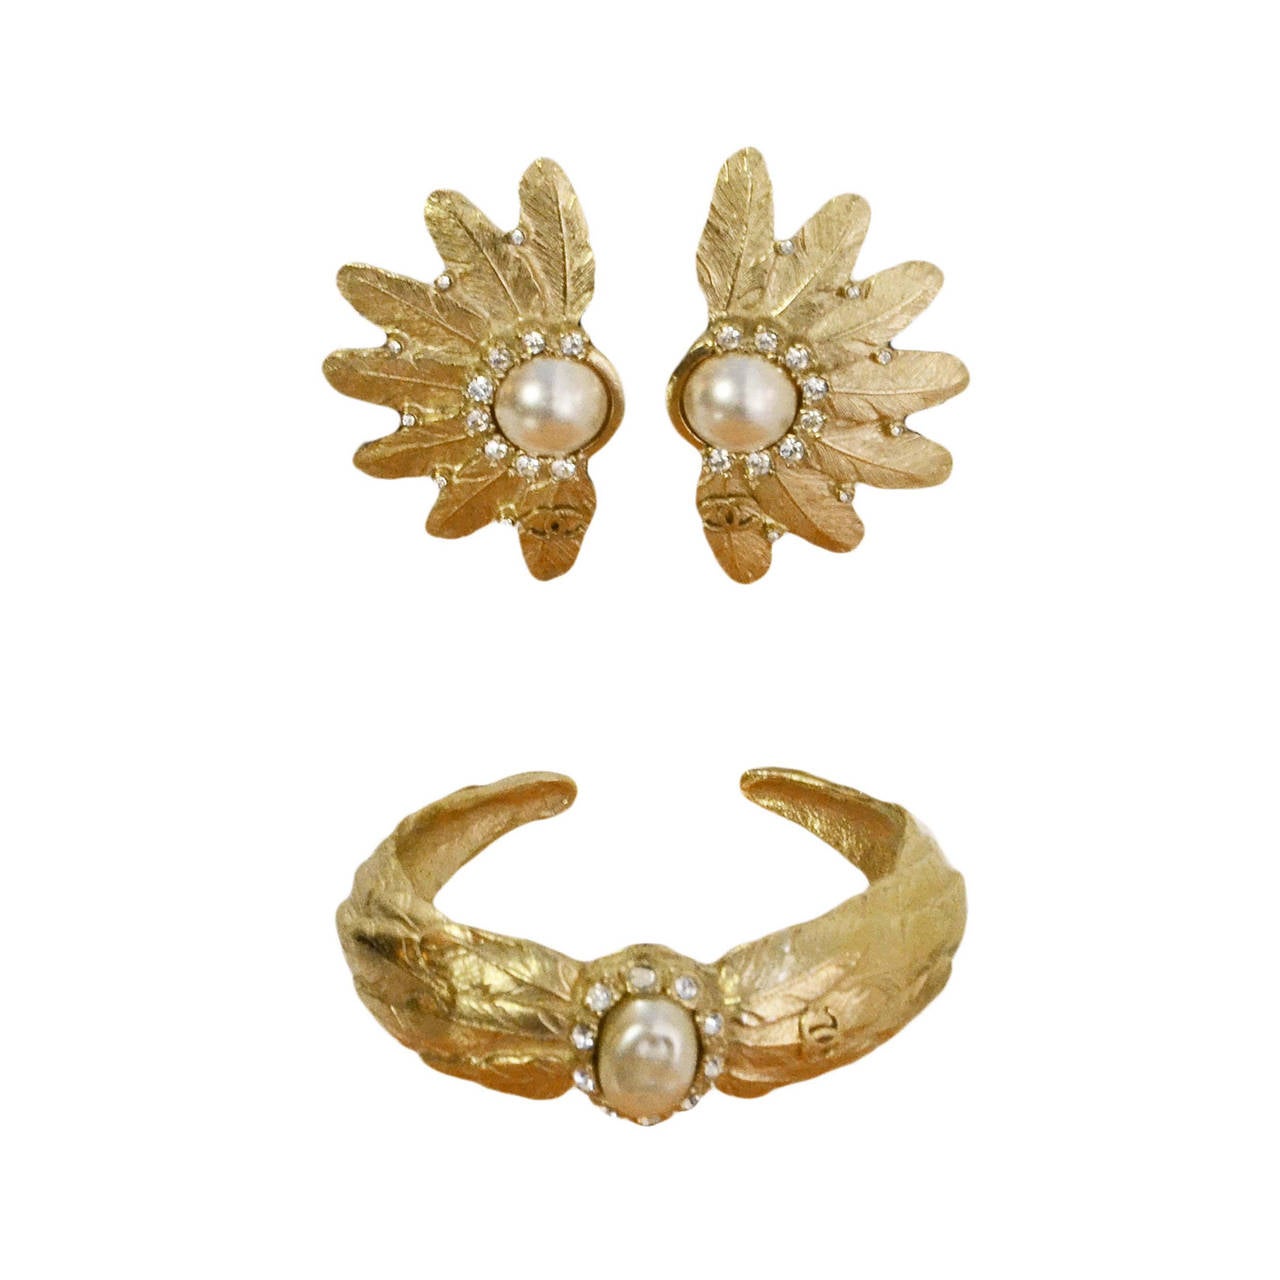 Chanel Pale Gold Pearl Cuff Bracelet & Clip On Earrings Set